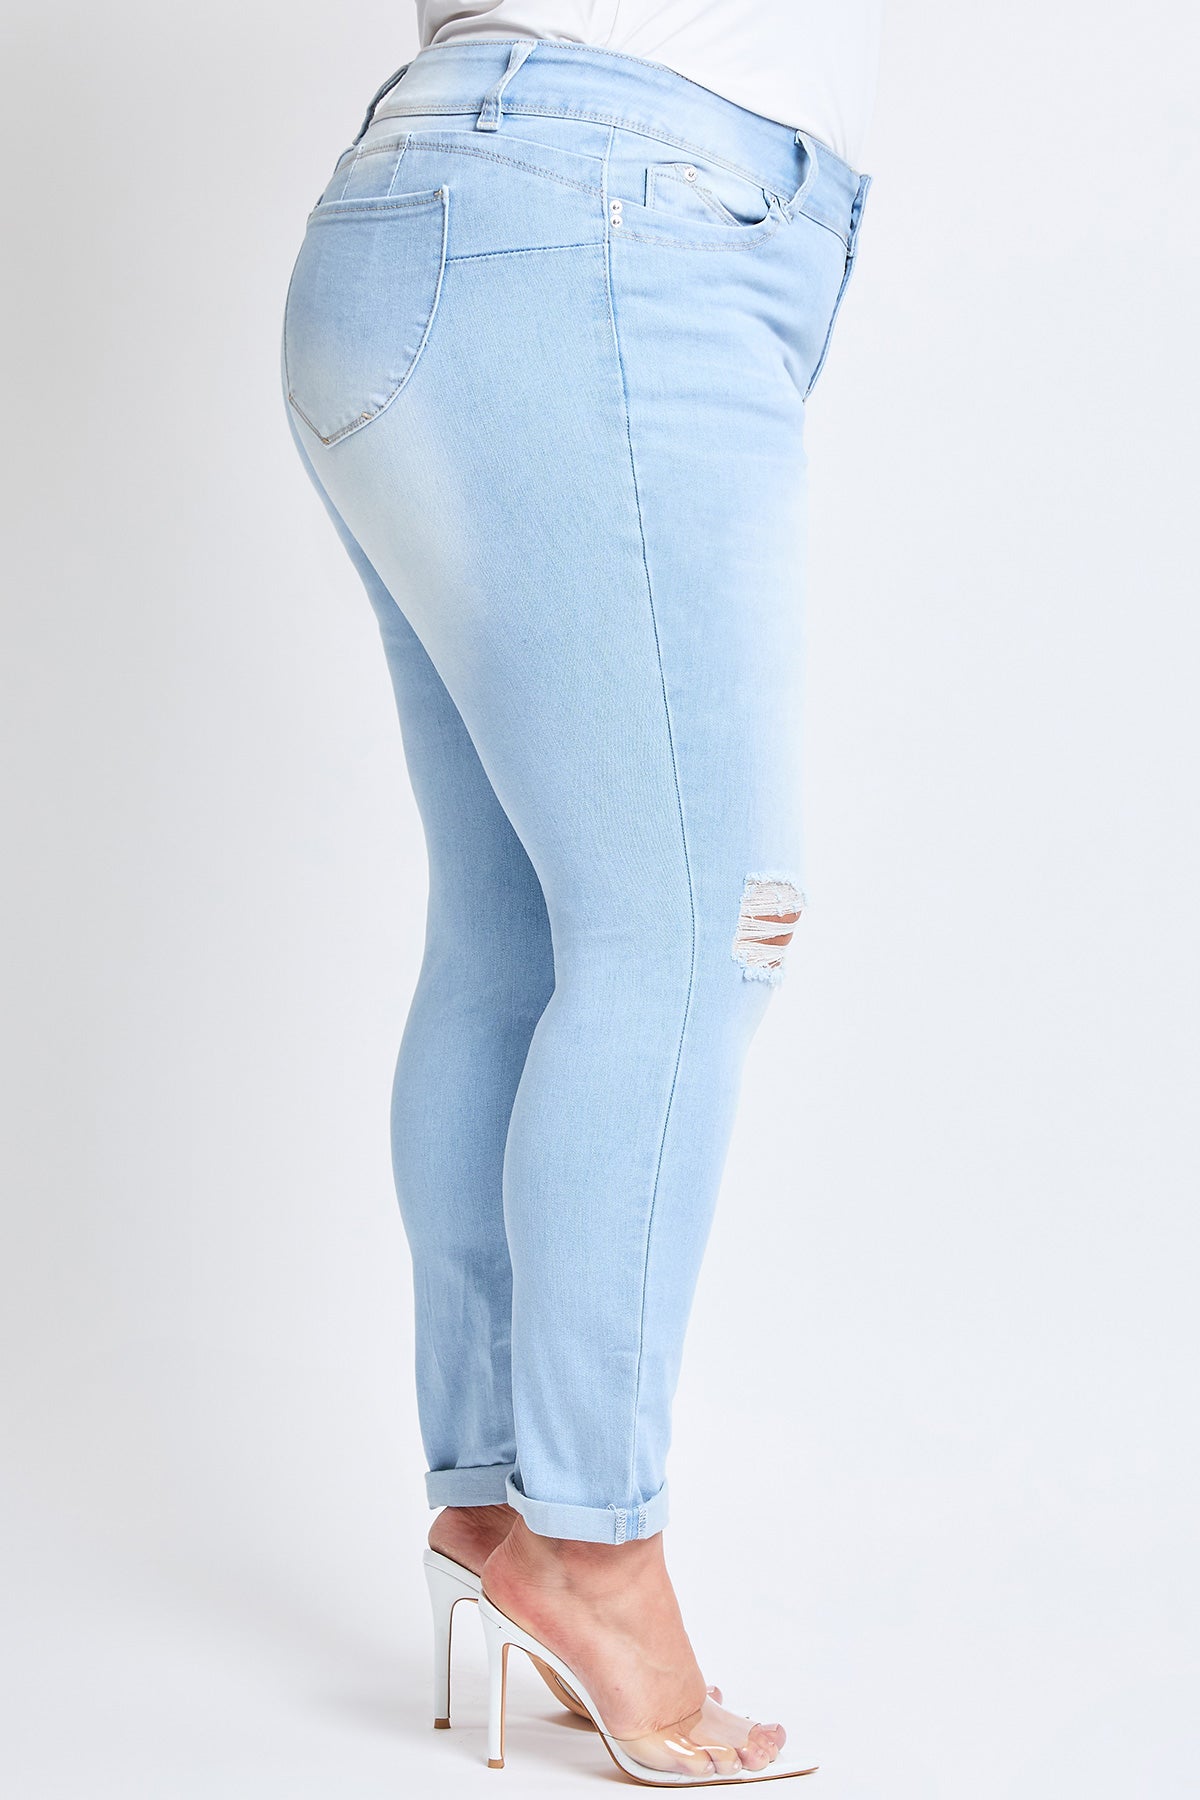 Plus Size Women's WannaBettaButt Cuffed Ankle Jeans-Sale